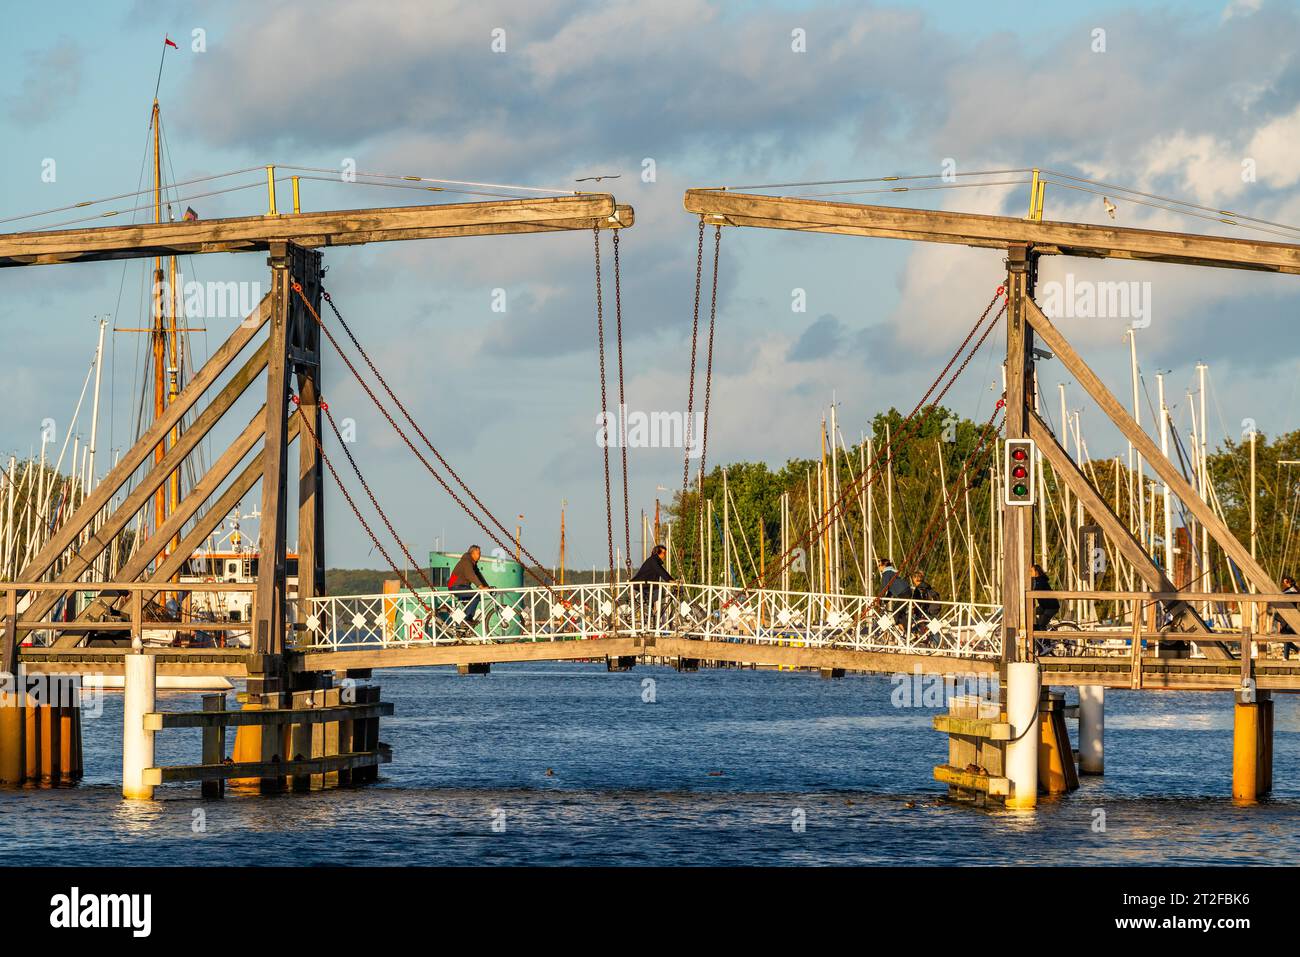 Historische Wieck hölzerne Klappbrücke über den Fluss Ryck, Fischerdorf Wieck, Greifswald, Mecklenburg-Vorpommern, Deutschland Stockfoto